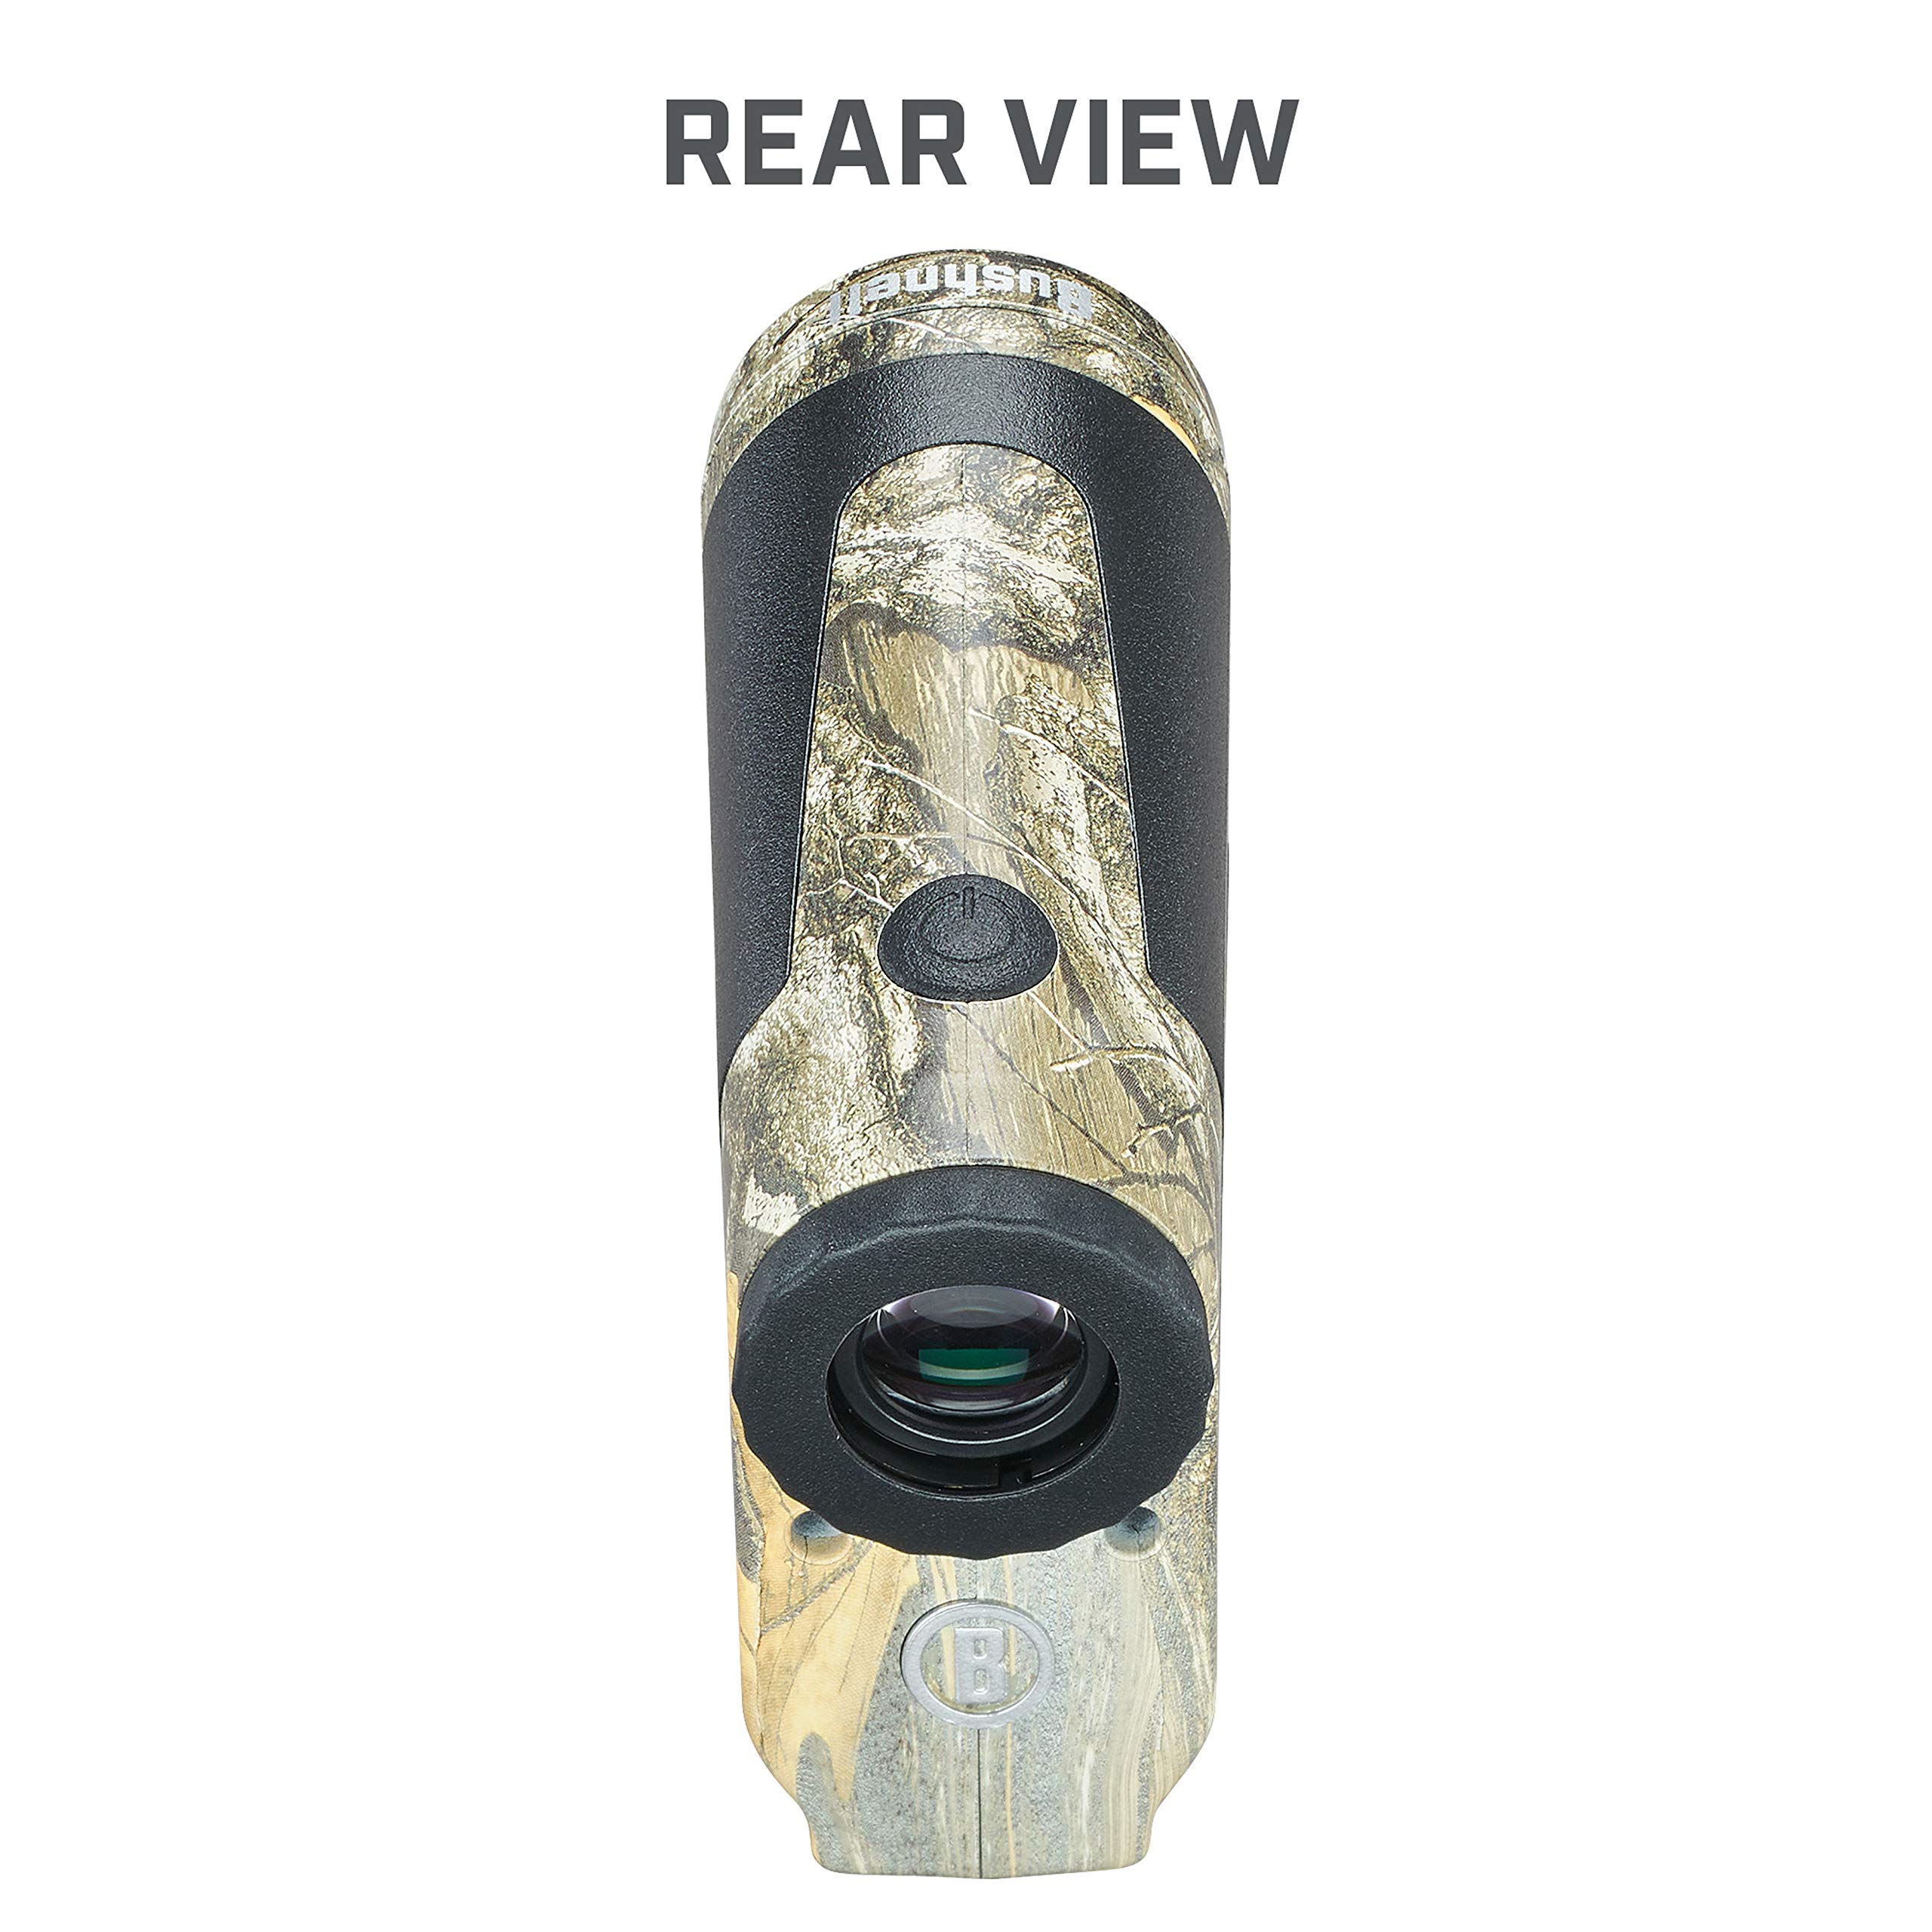 Bushnell BoneCollector 850 Laser Rangefinder, Hunting Laser Range Finder in Realtree Edge Camo